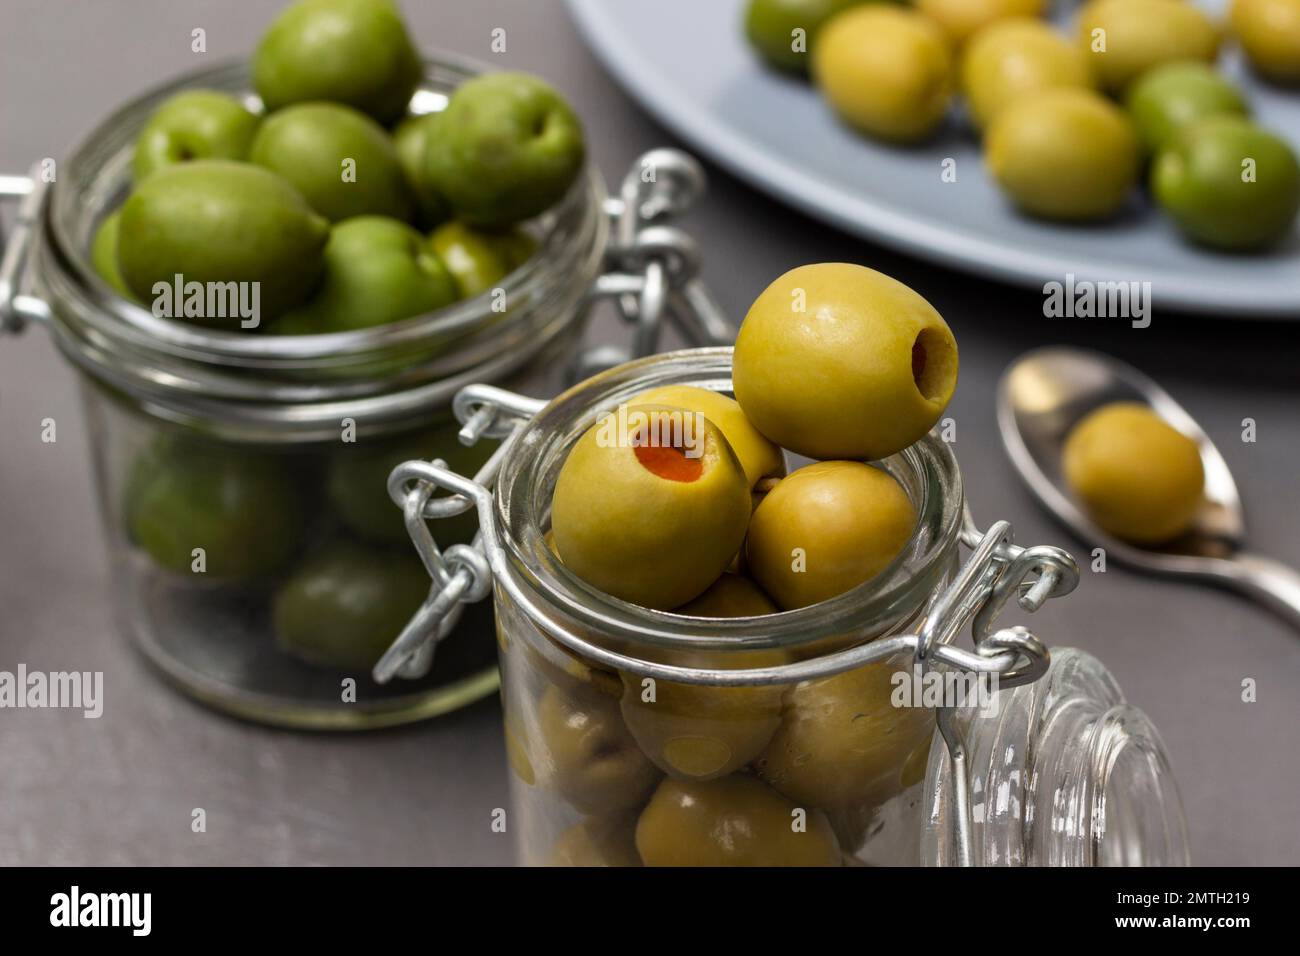 Grüne Oliven in Glasgefäßen. Oliven auf einem blauen Teller. Schließen. Grauer Hintergrund. Stockfoto